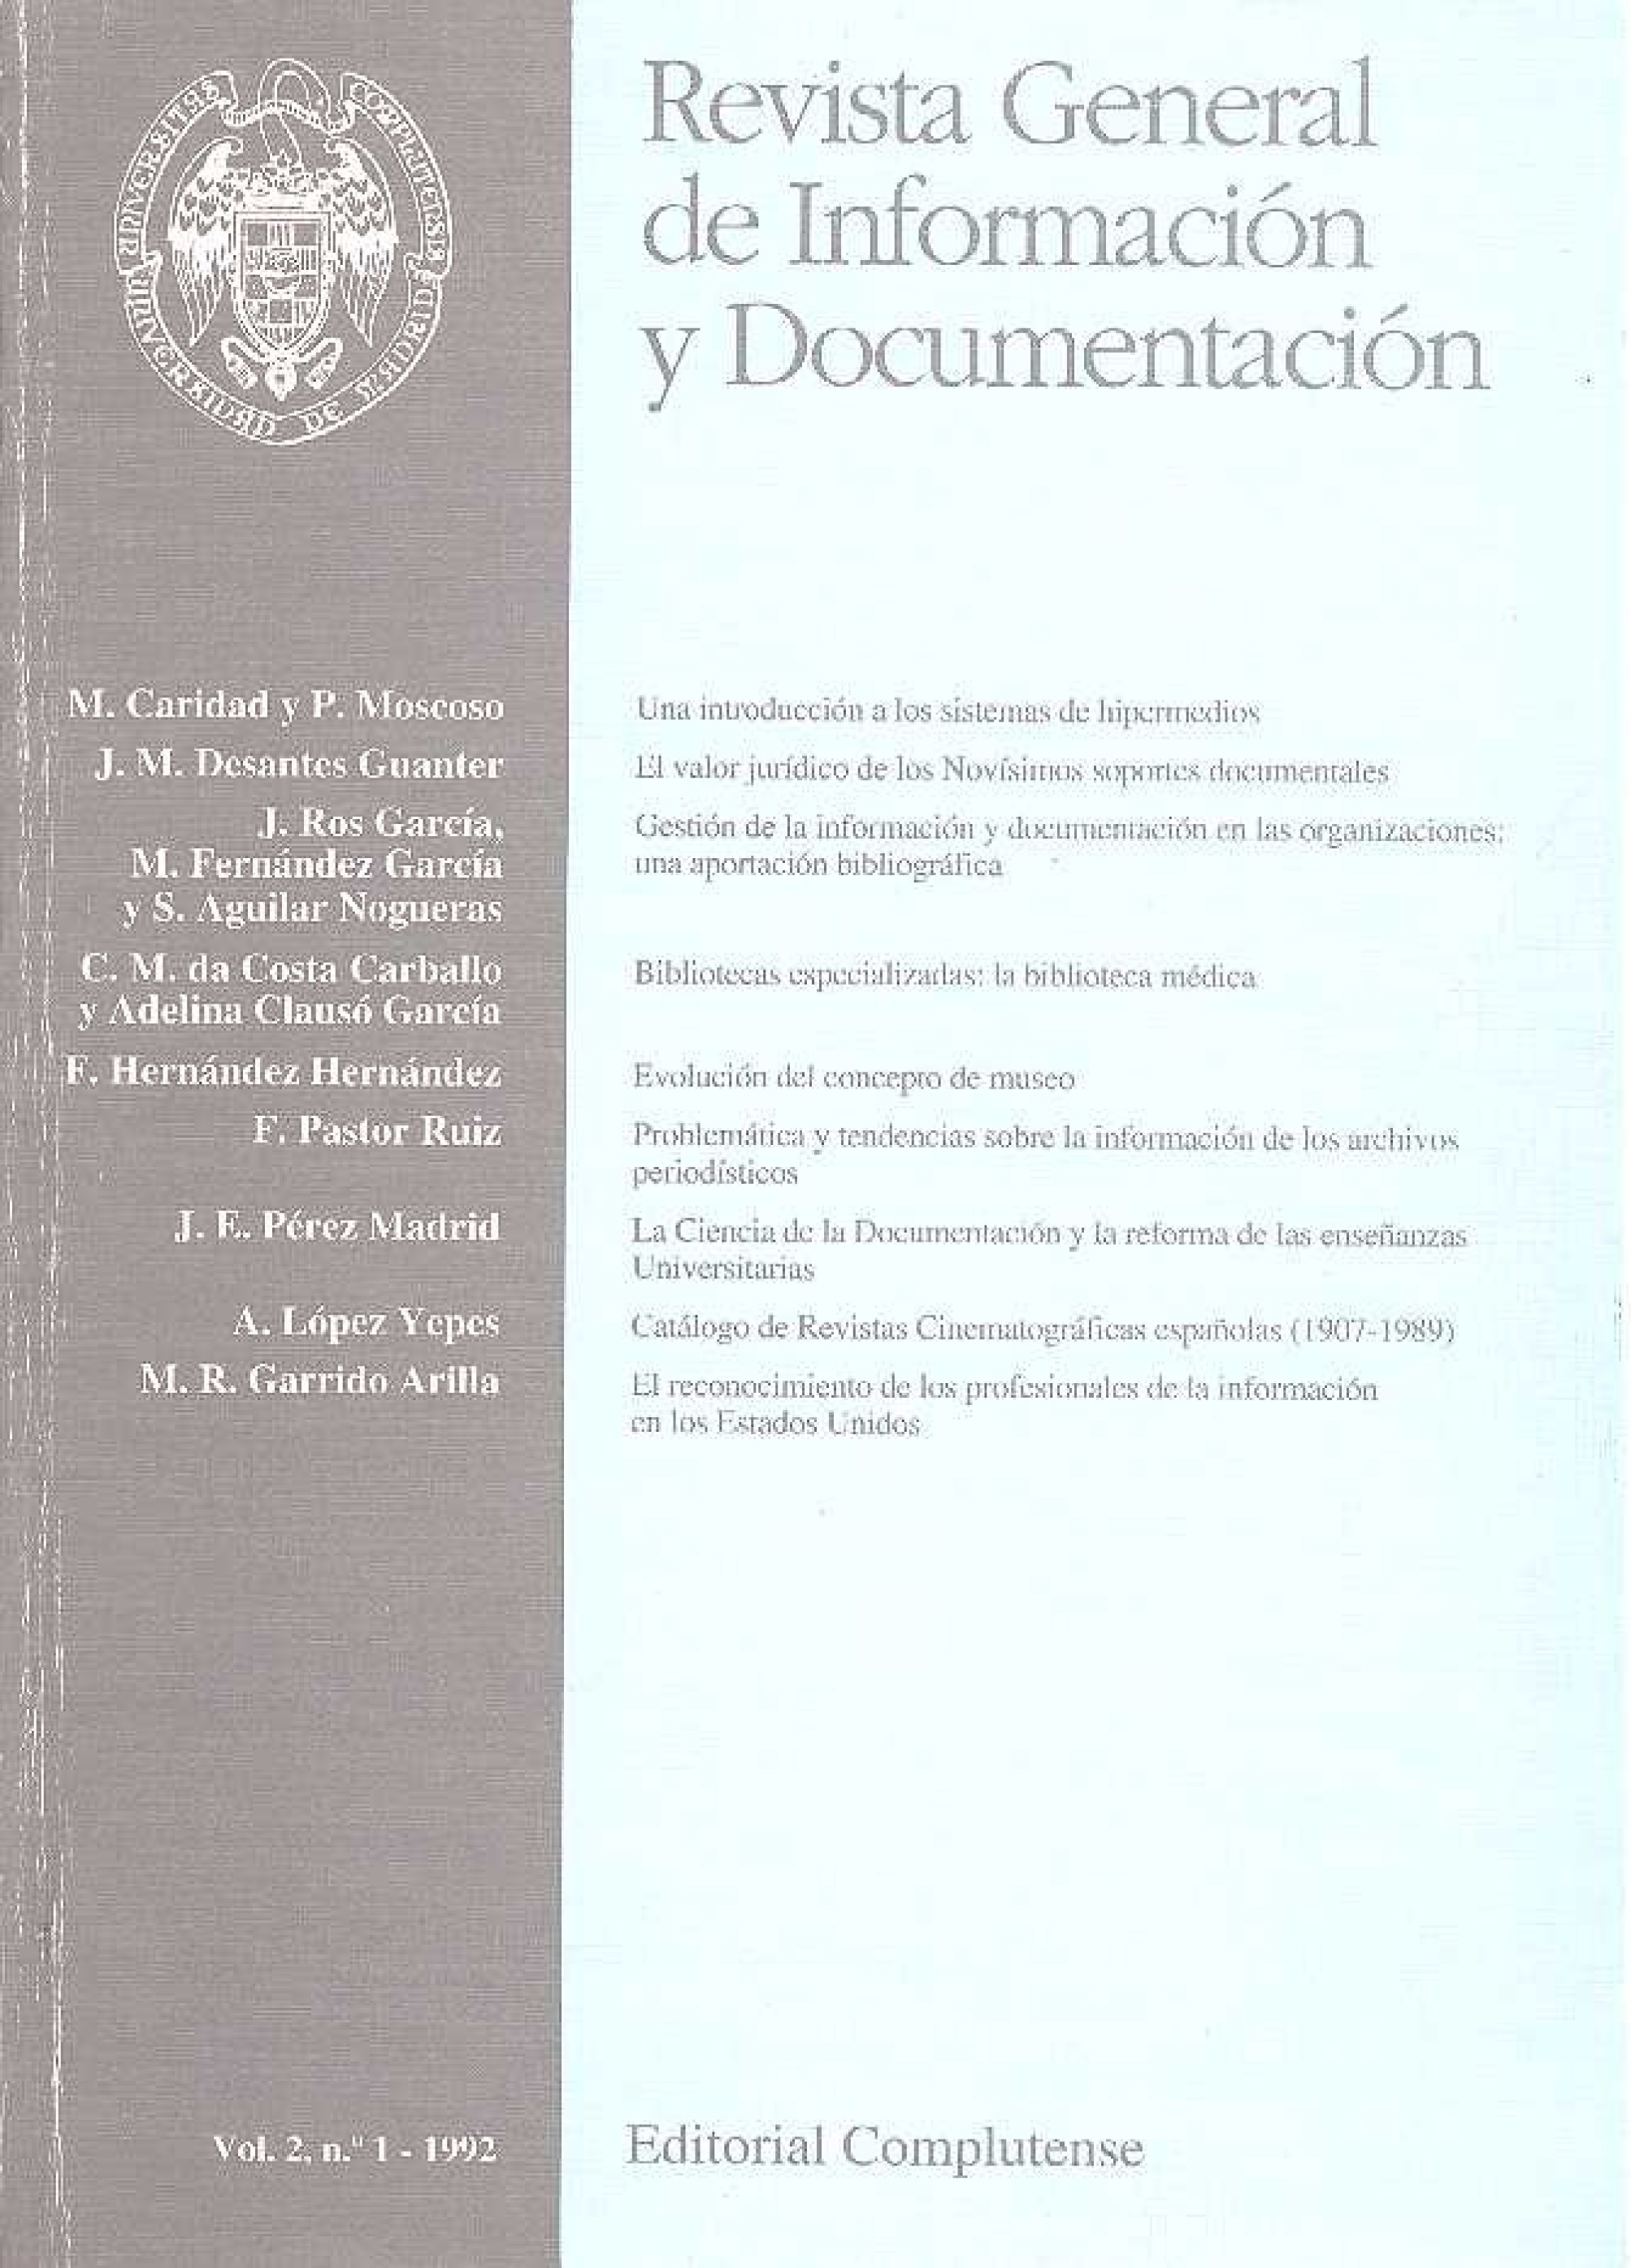 					Ver Vol. 2 Núm. 1 (1992)
				